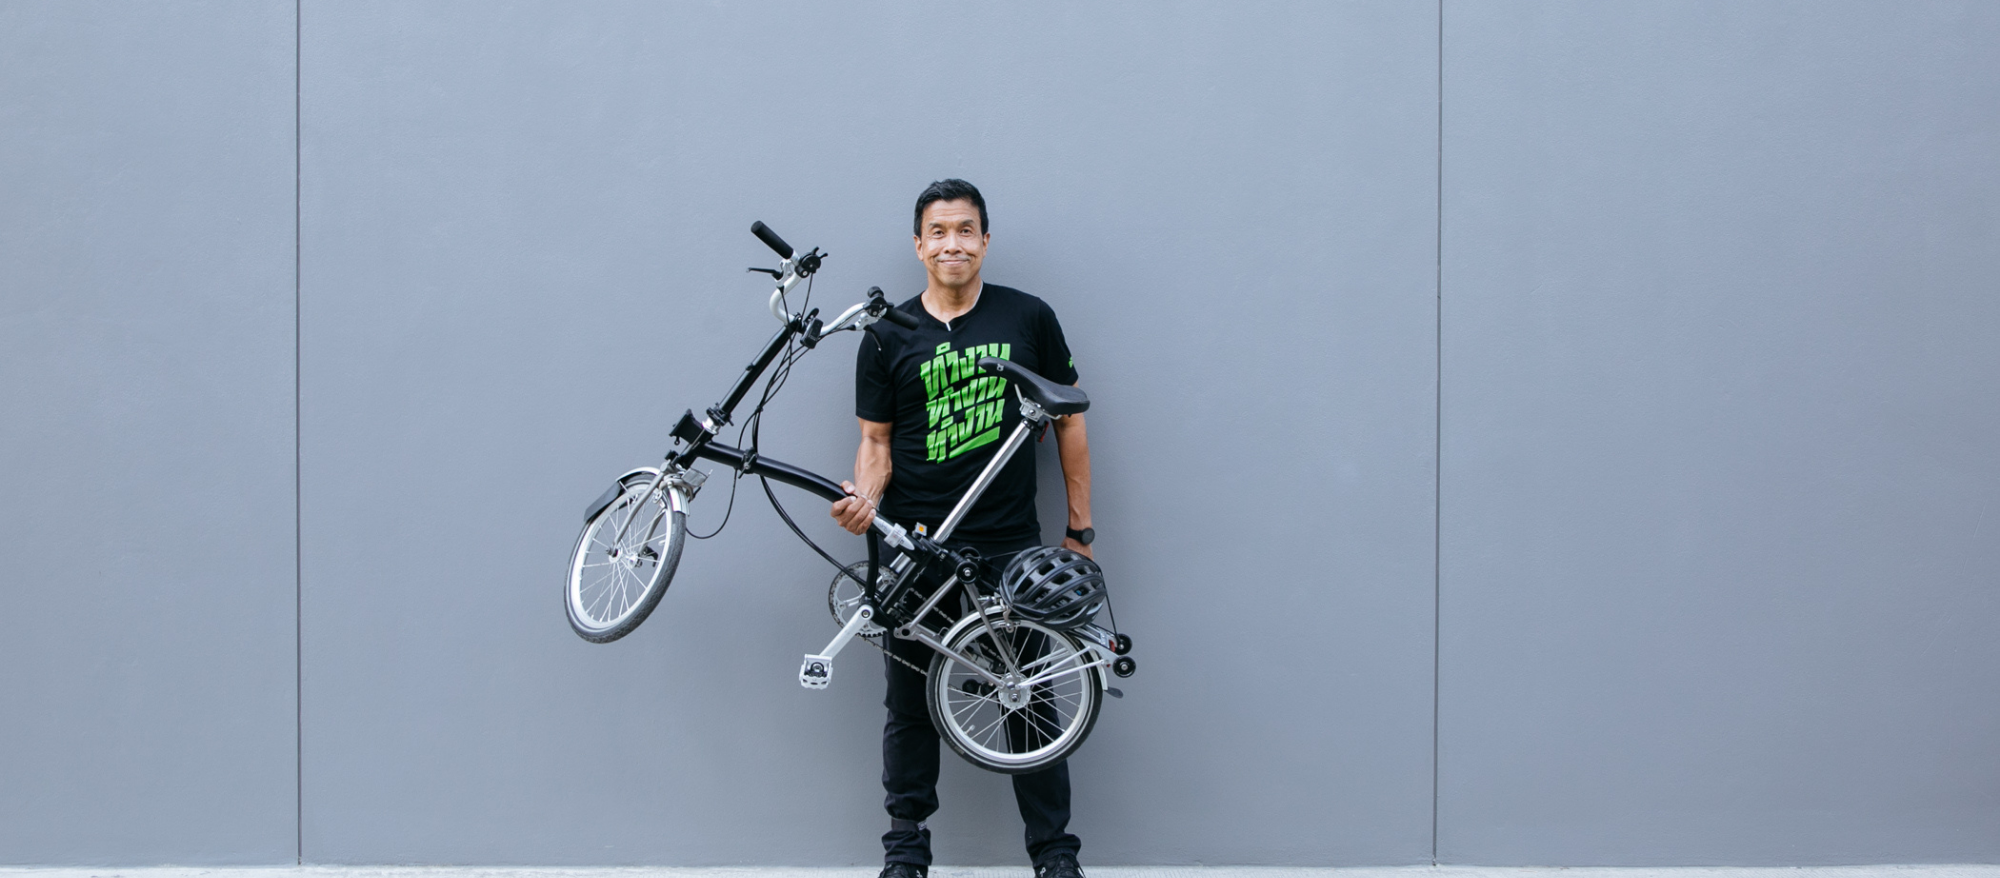 ชัชชาติ จักรยาน และการต่อสู้เพื่อเมืองที่ดี | HUMAN RIDE Radio EP.01